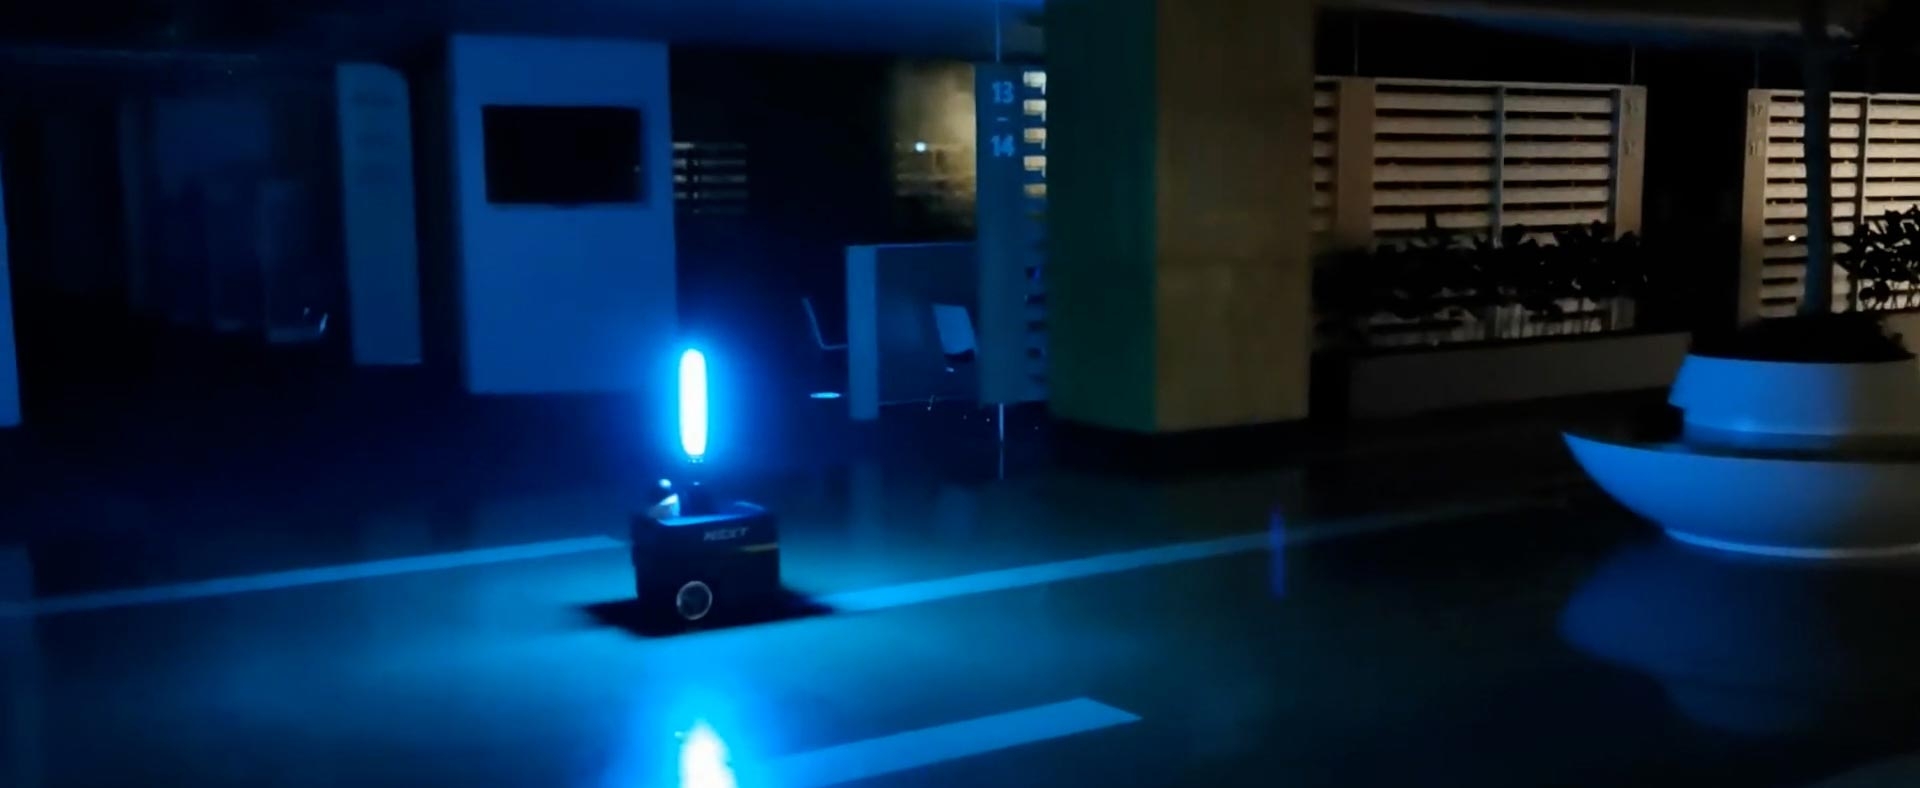 有一个商业空间内的自主机器人安装紫外线消毒建筑物内部。